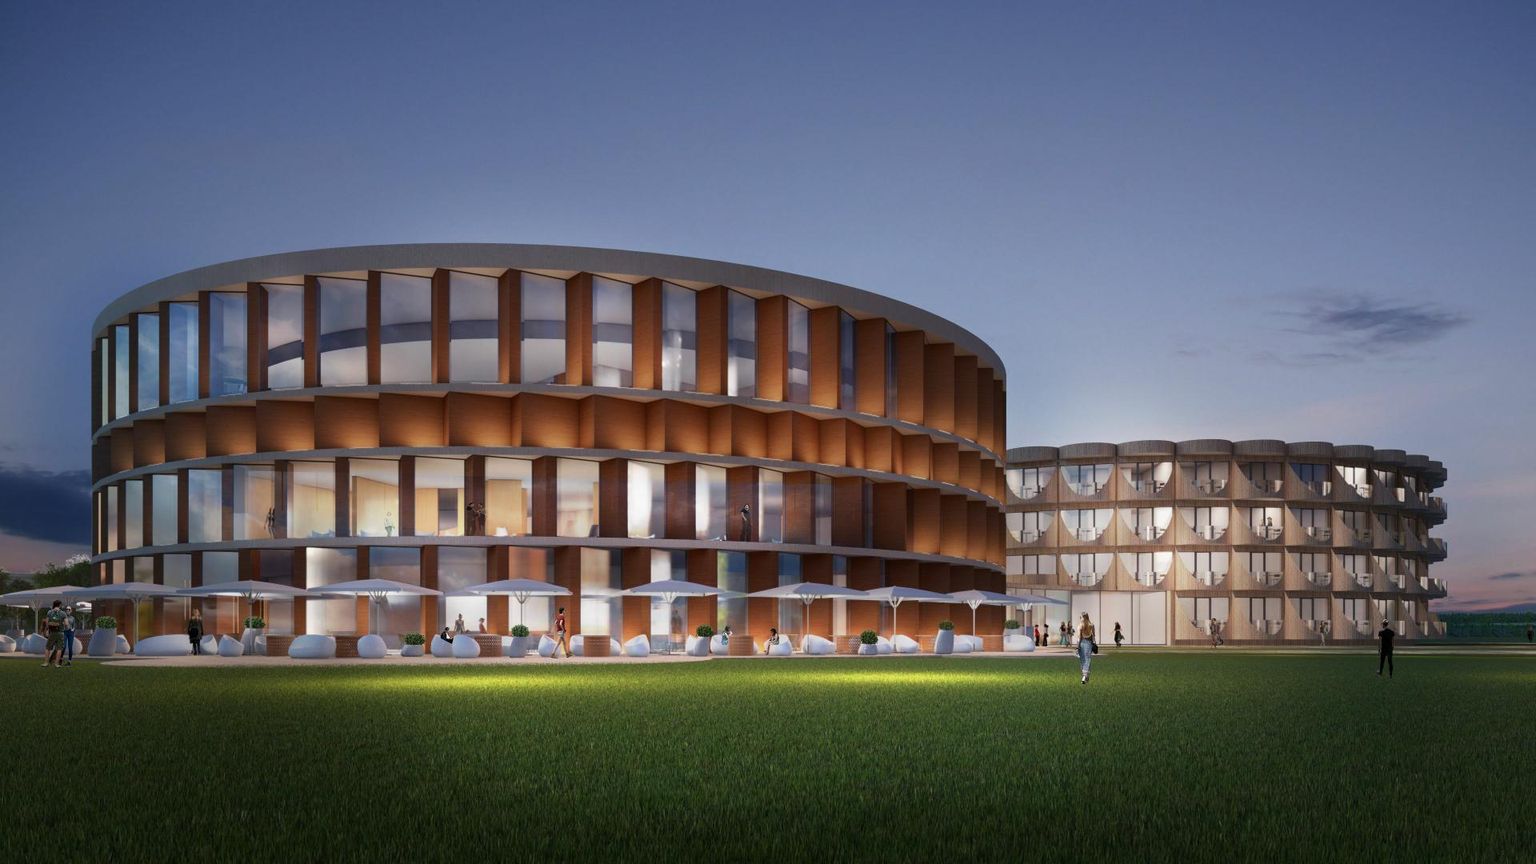 Viljandi spaahotelli ehituseks on valmis KOKO arhitektuuribüroo projekt ning ehituse ettevalmistamiseks on arendaja teinud ligi kahe miljoni euro suuruse investeeringu.